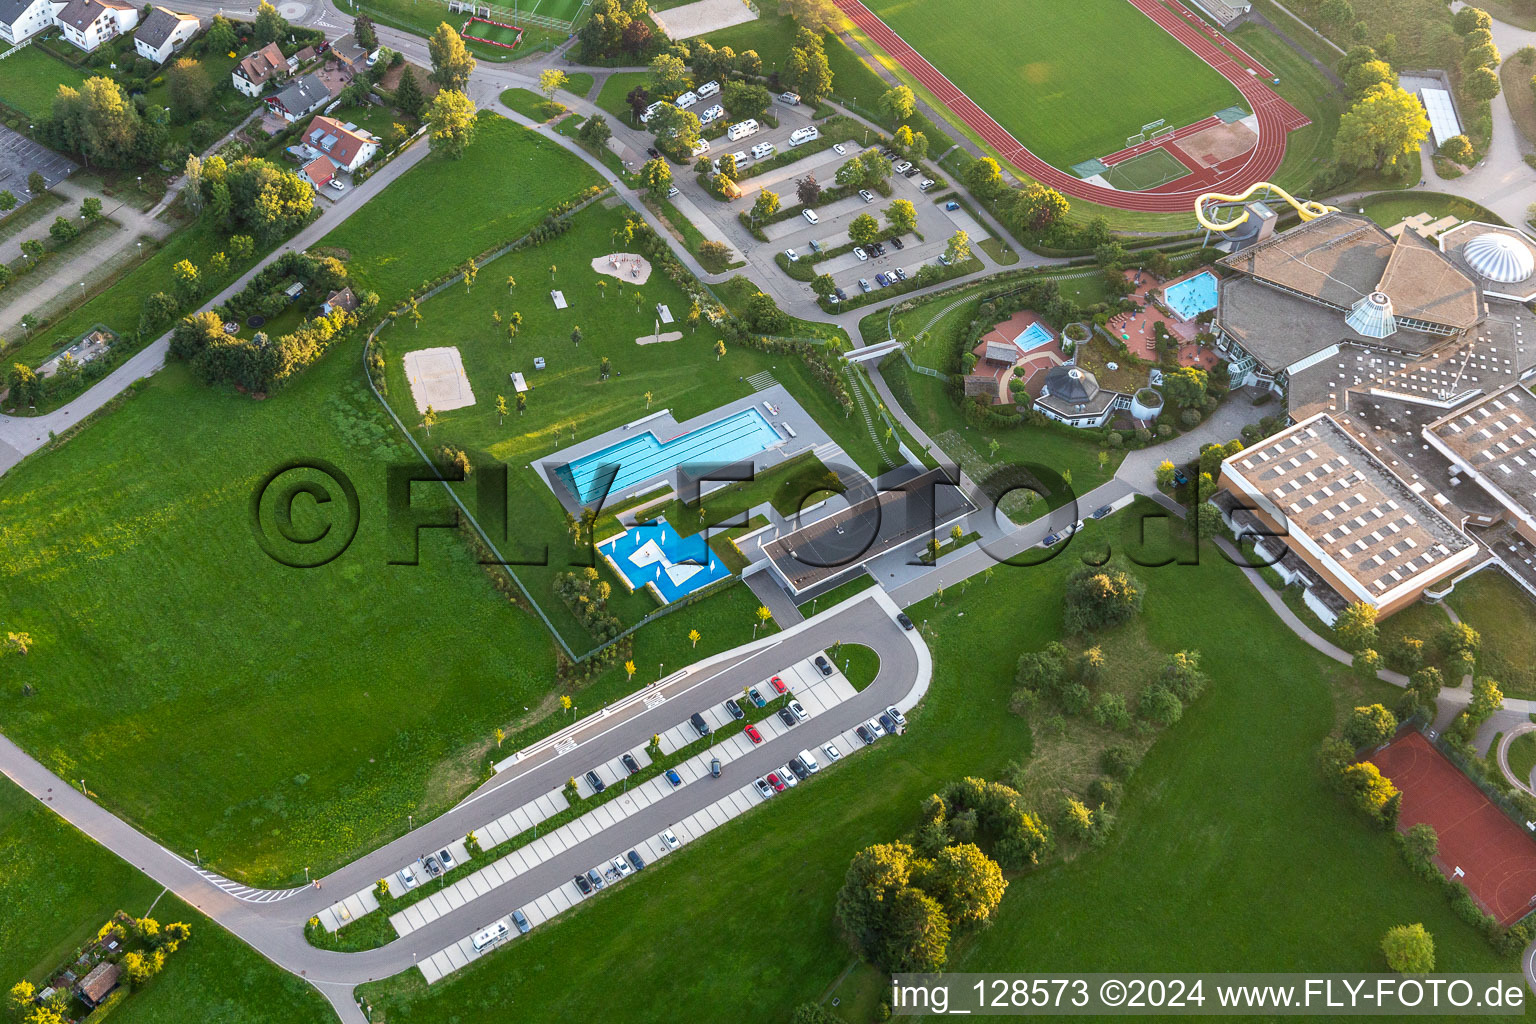 Vue aérienne de Piscine ouverte de la piscine extérieure Panorama-Bad à Freudenstadt dans le département Bade-Wurtemberg, Allemagne